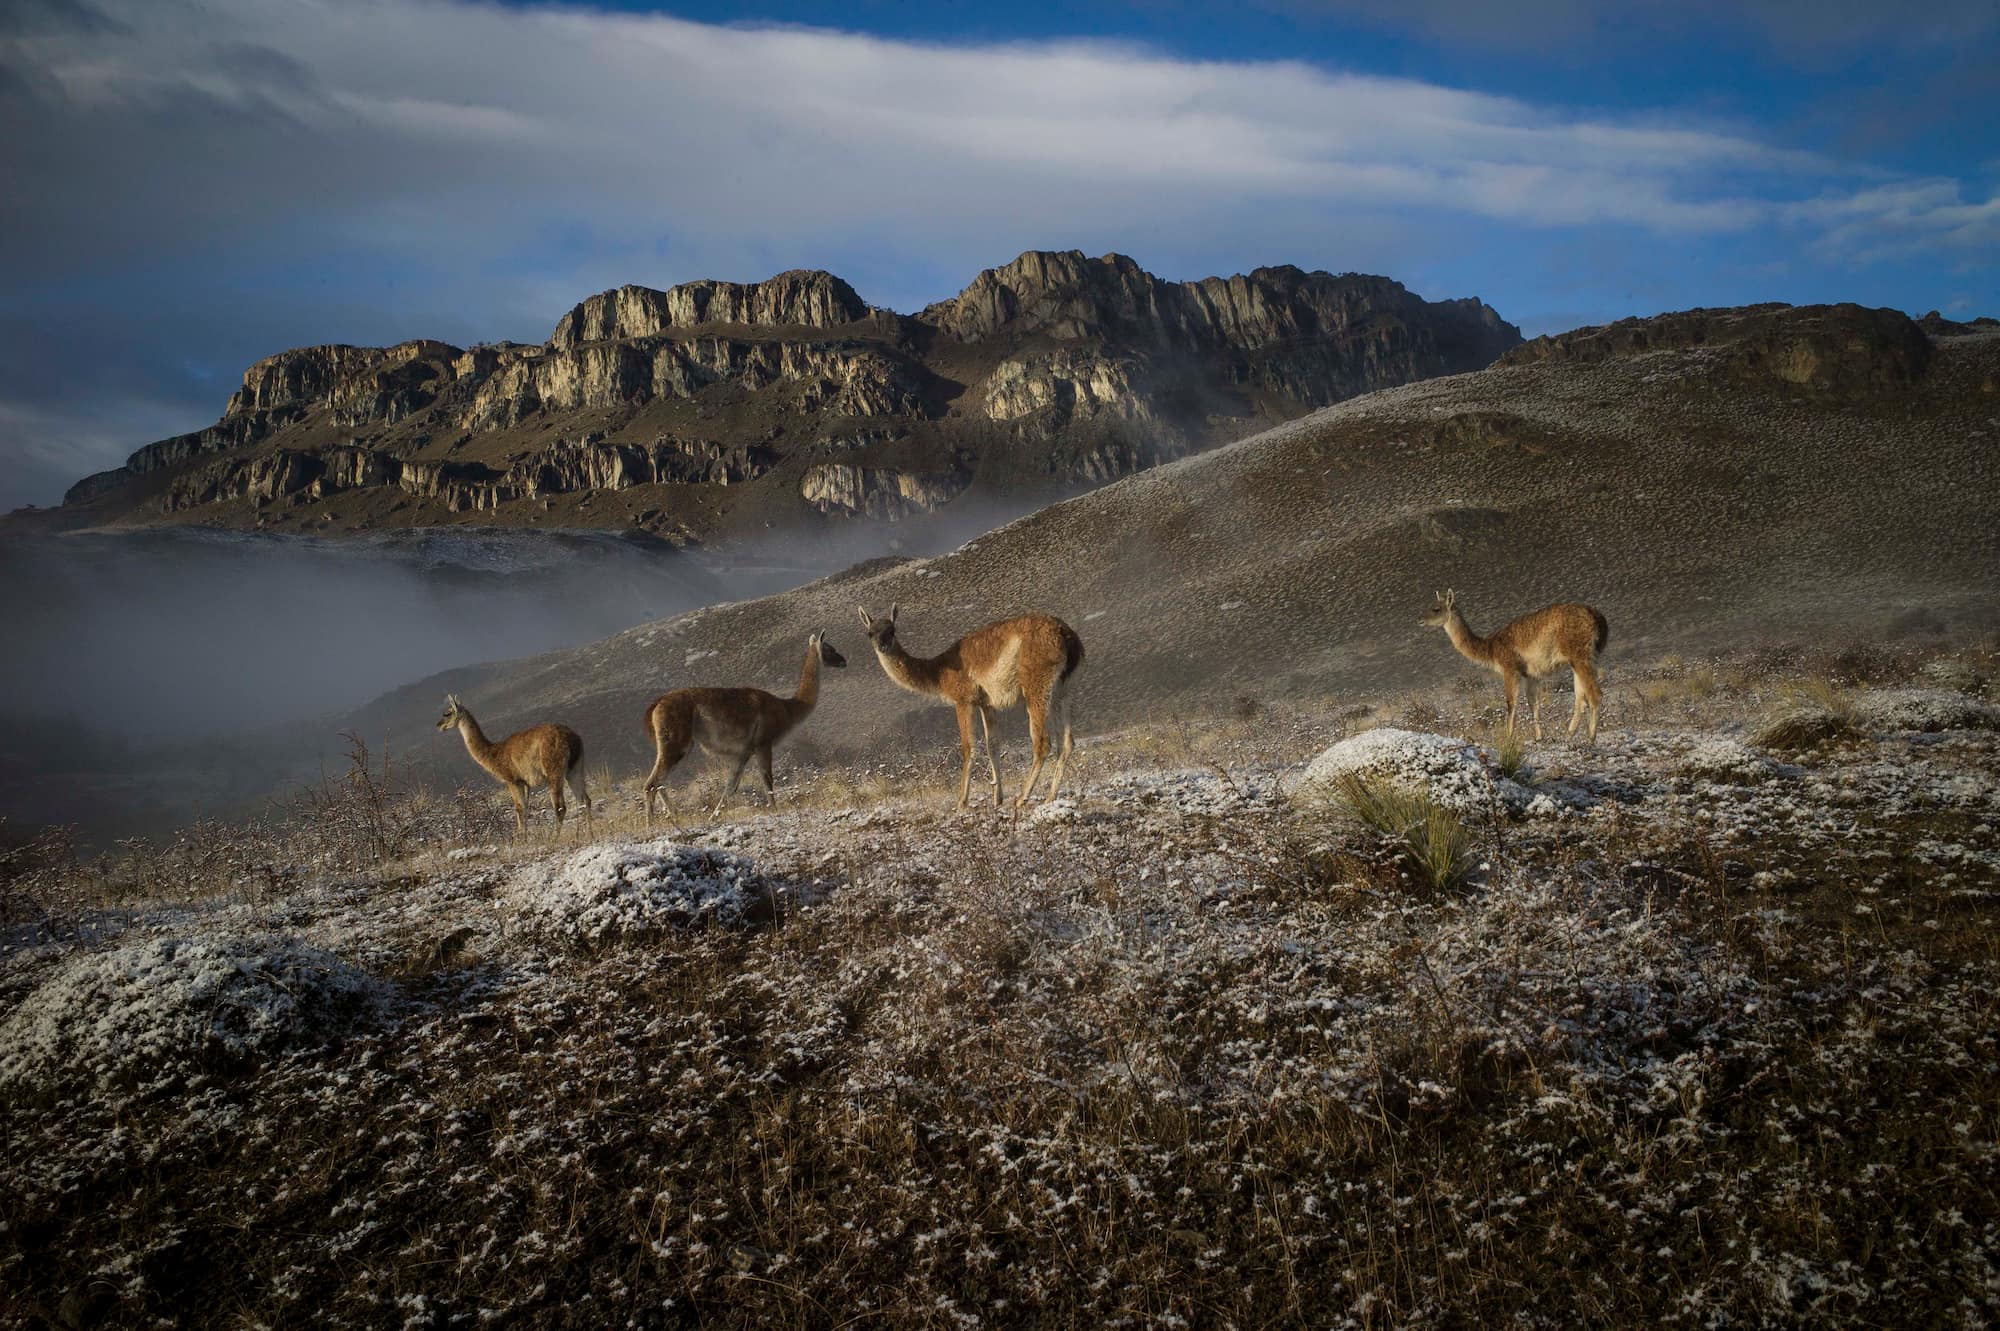 Deer in a rocky landscape